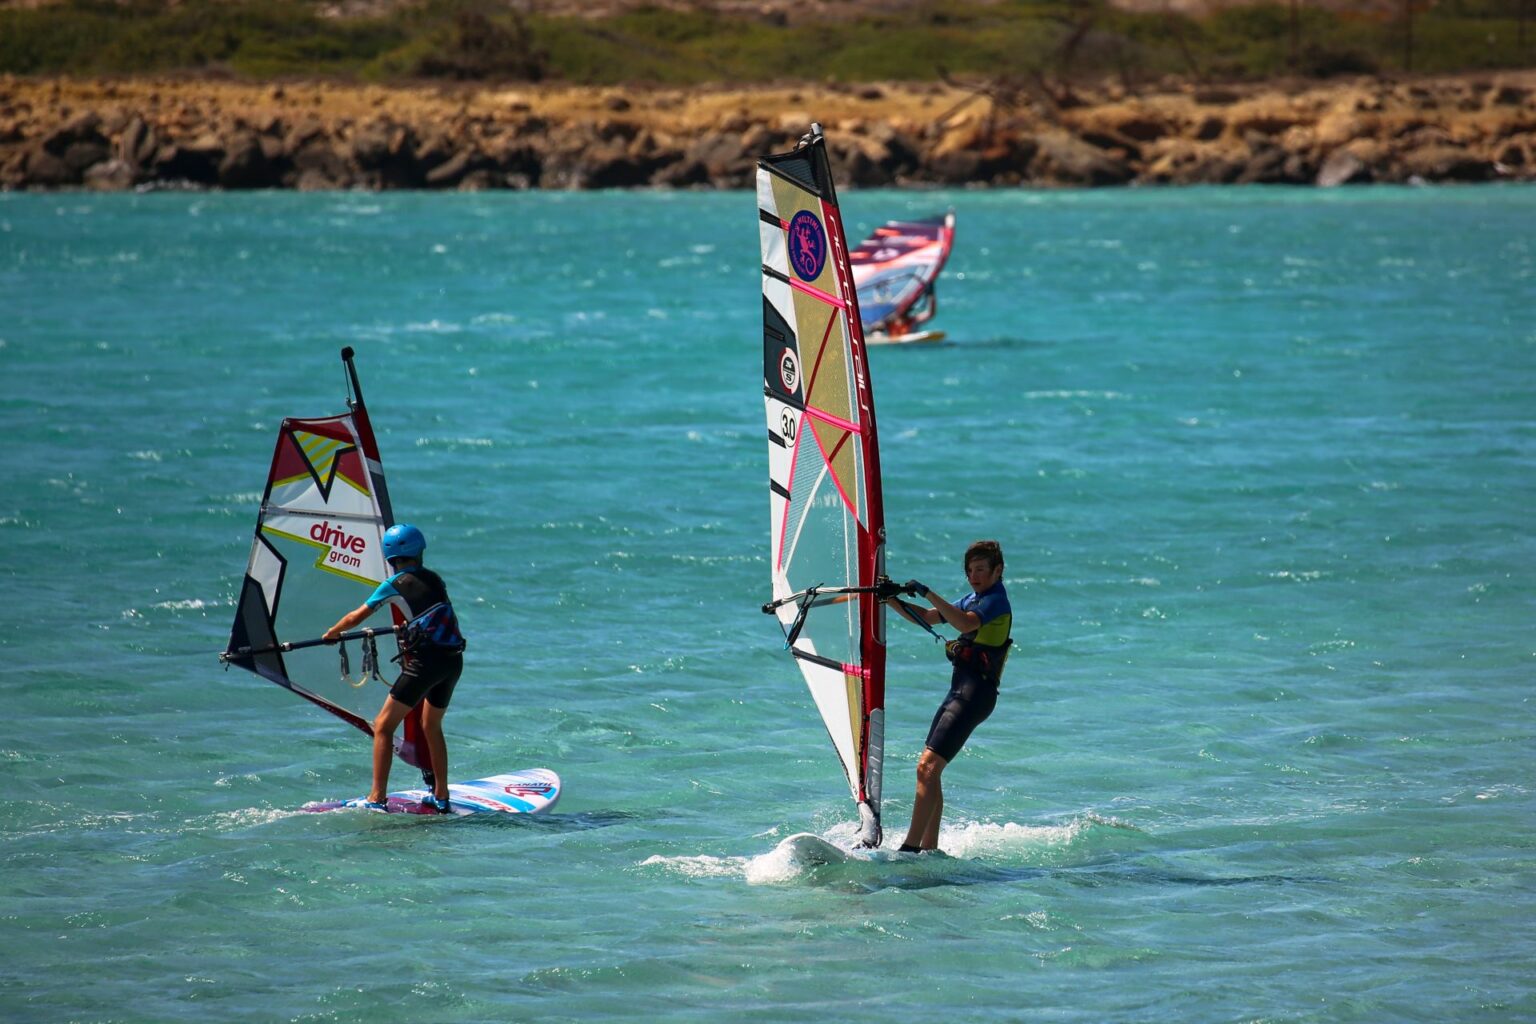 Teenagers windsurfing in Karpathos